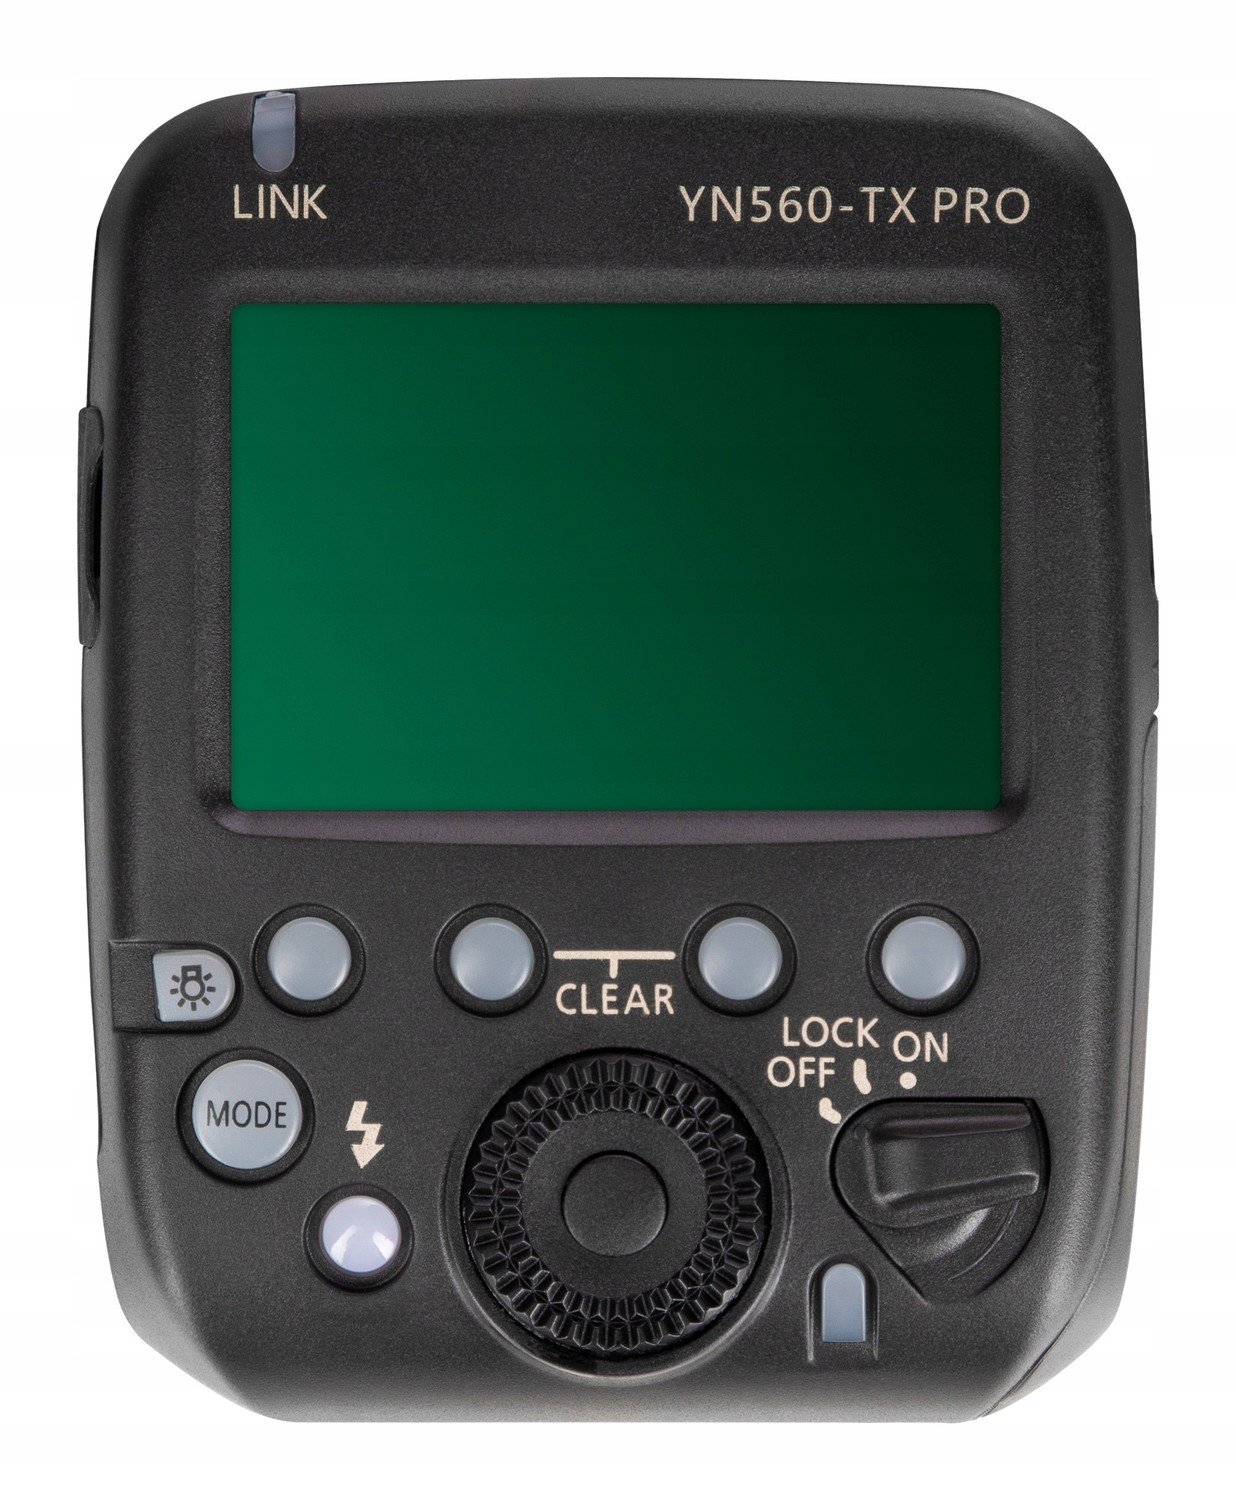 Rádiový ovladač Yongnuo YN560-TX Pro pro Nikon